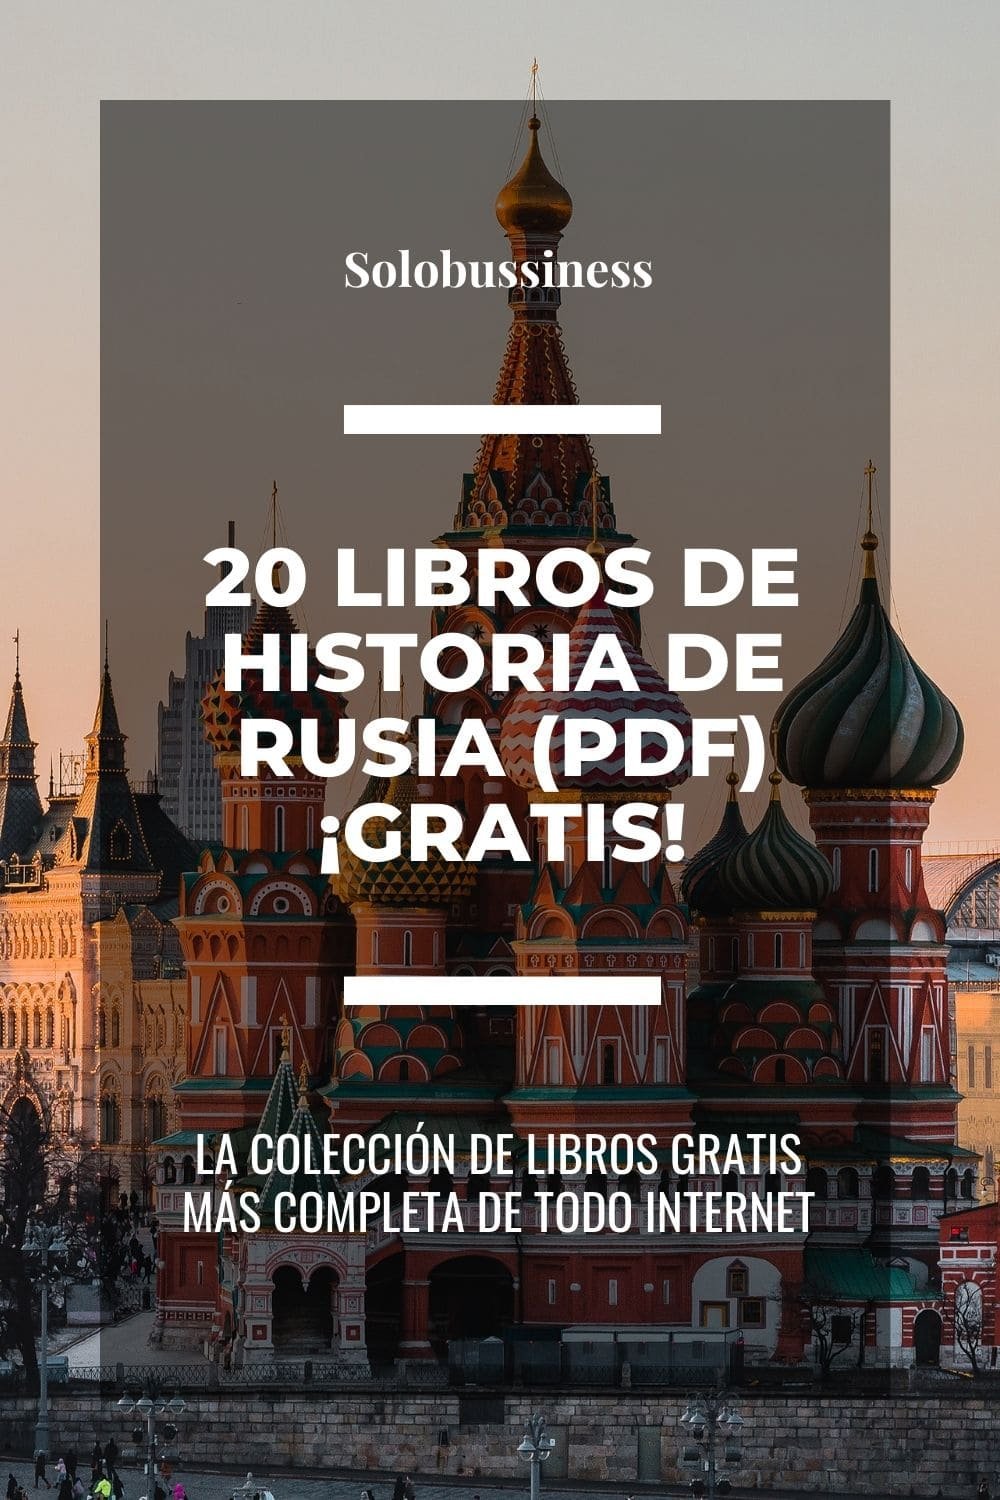 Libros de Historia de Rusia en formato pdf